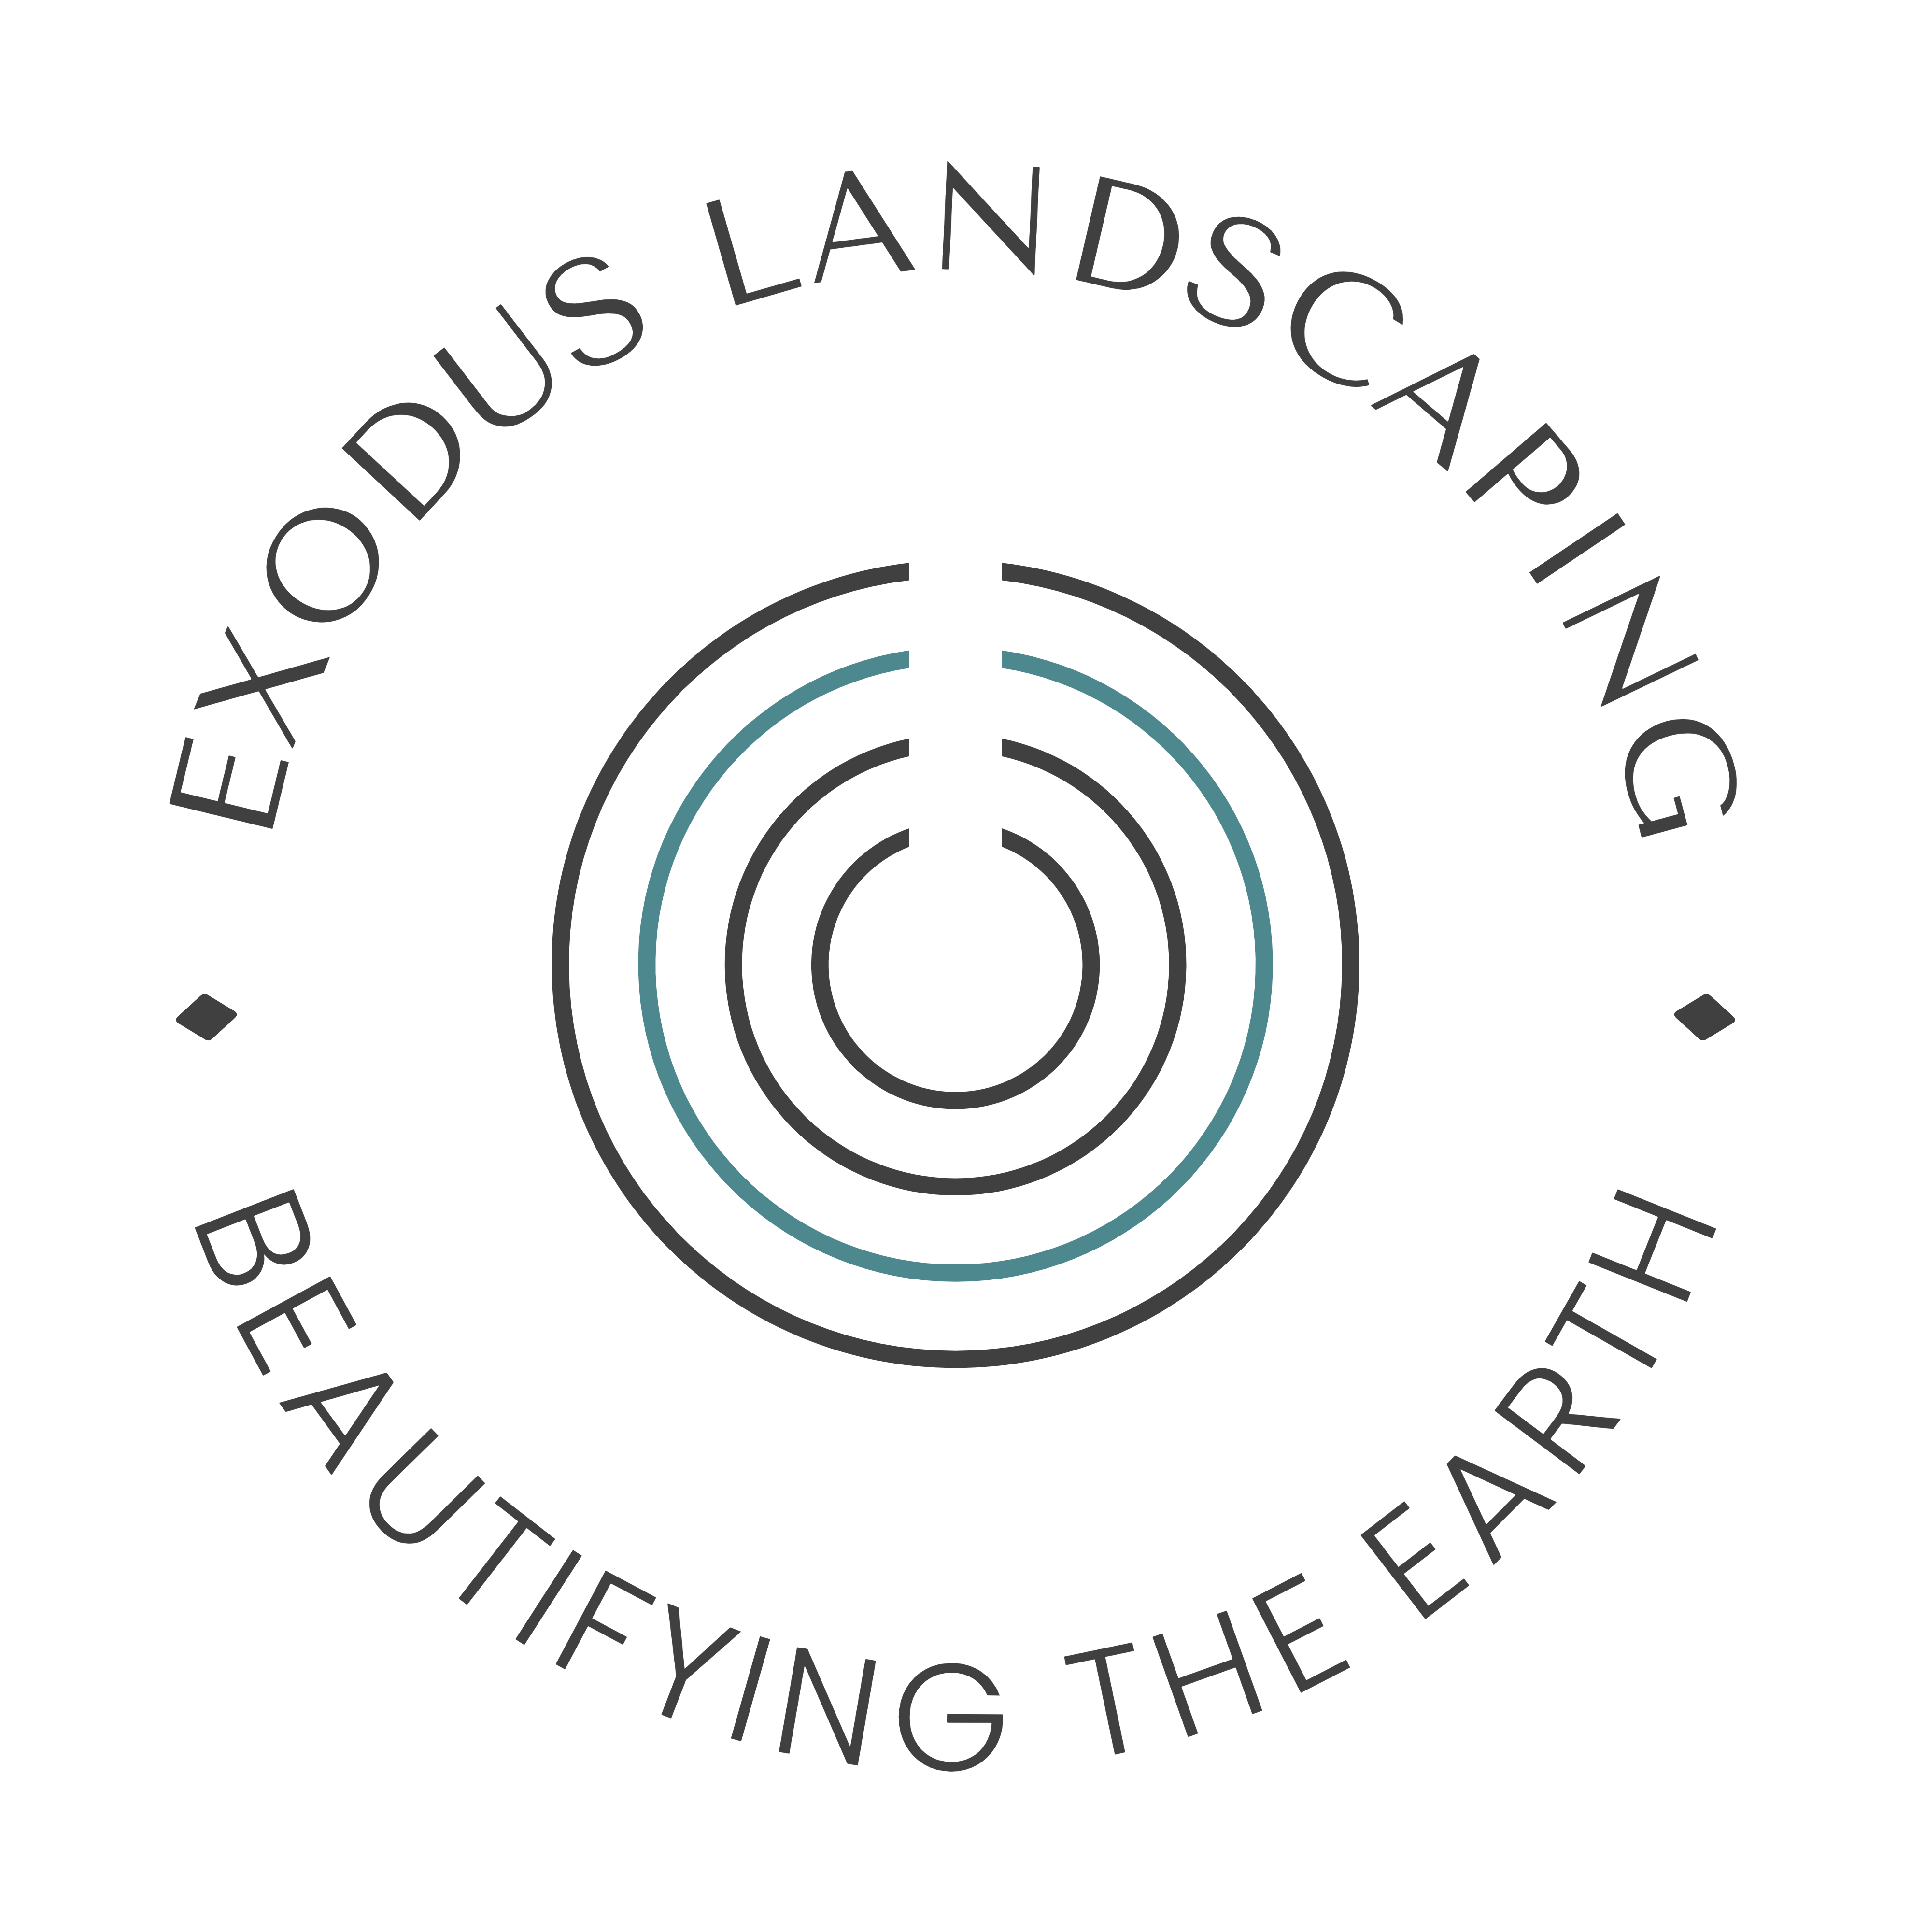 Exodus Landscaping's logo